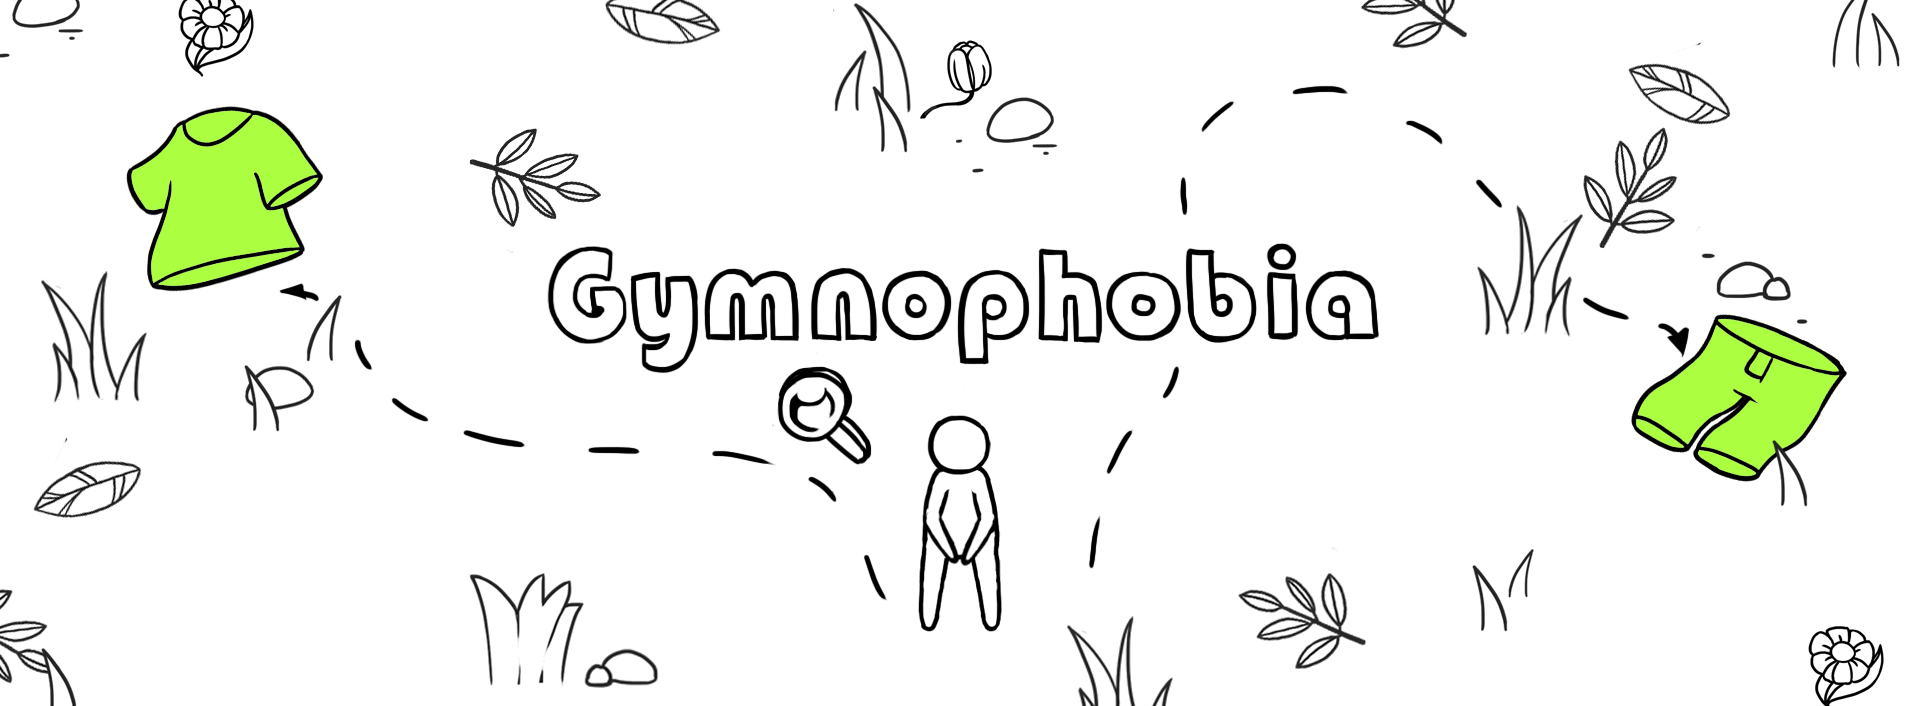 Gymnophobia